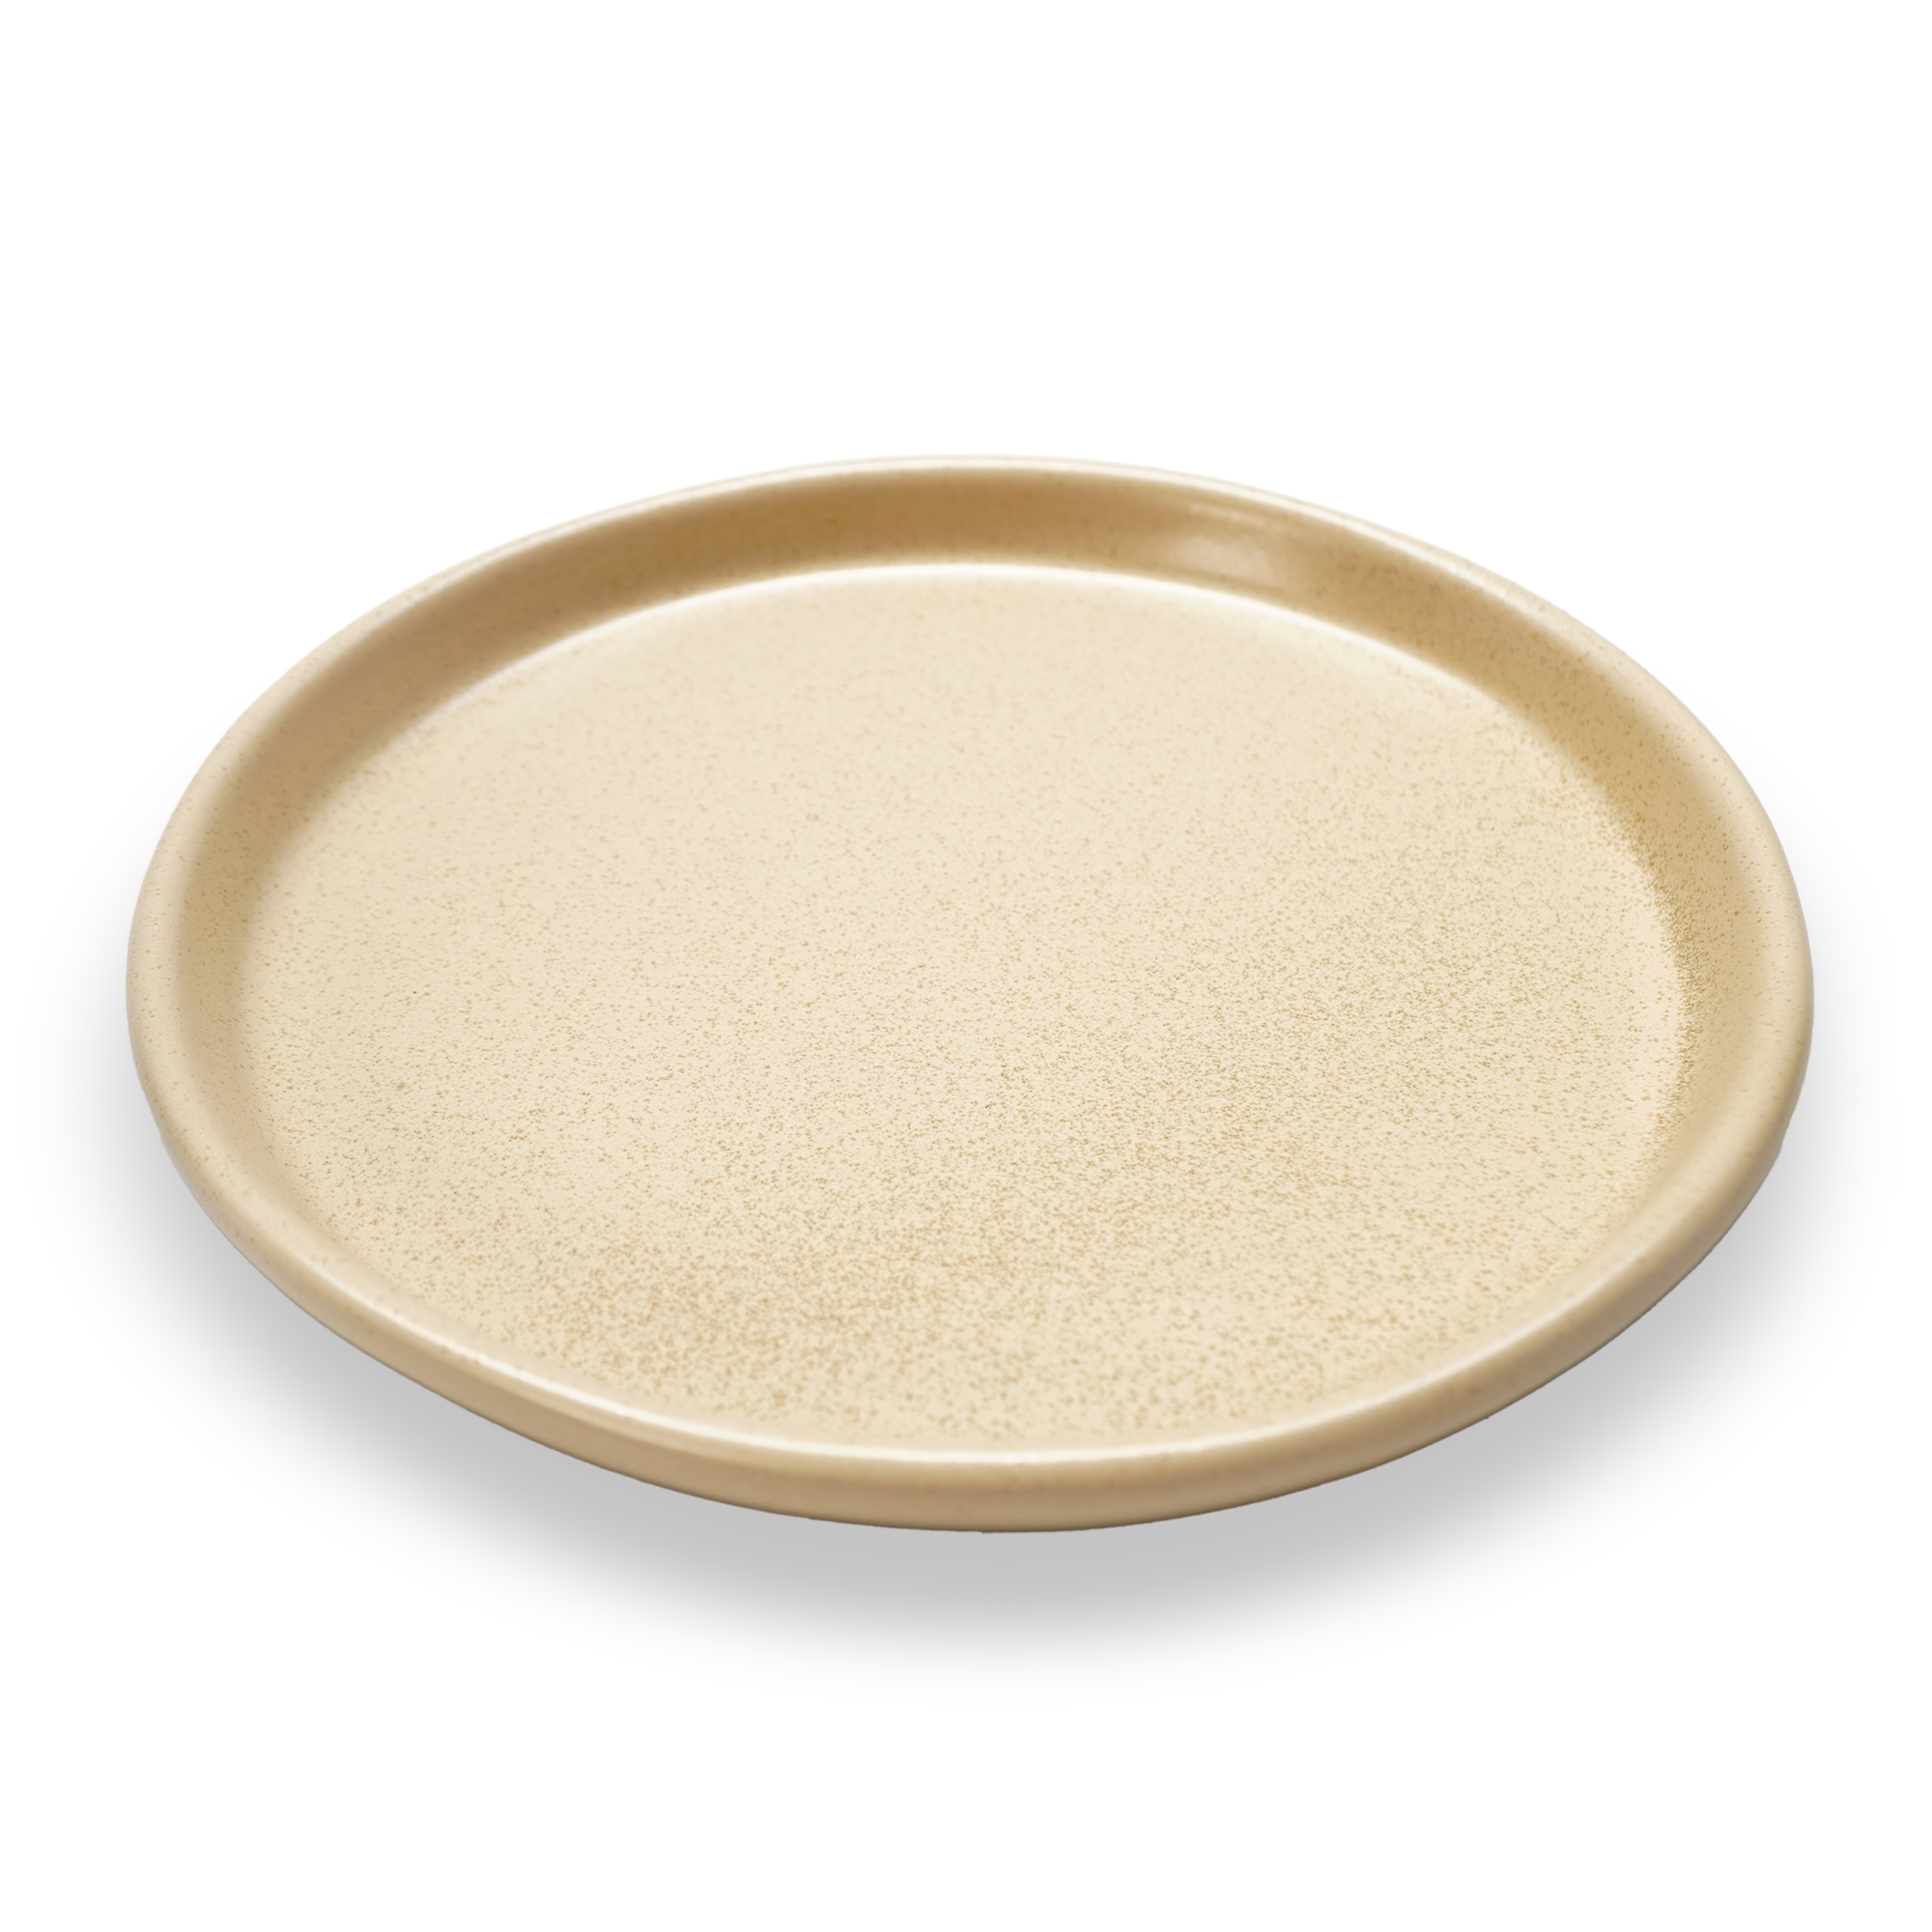 Horoeka ceramic Plate E711-P-06066 12